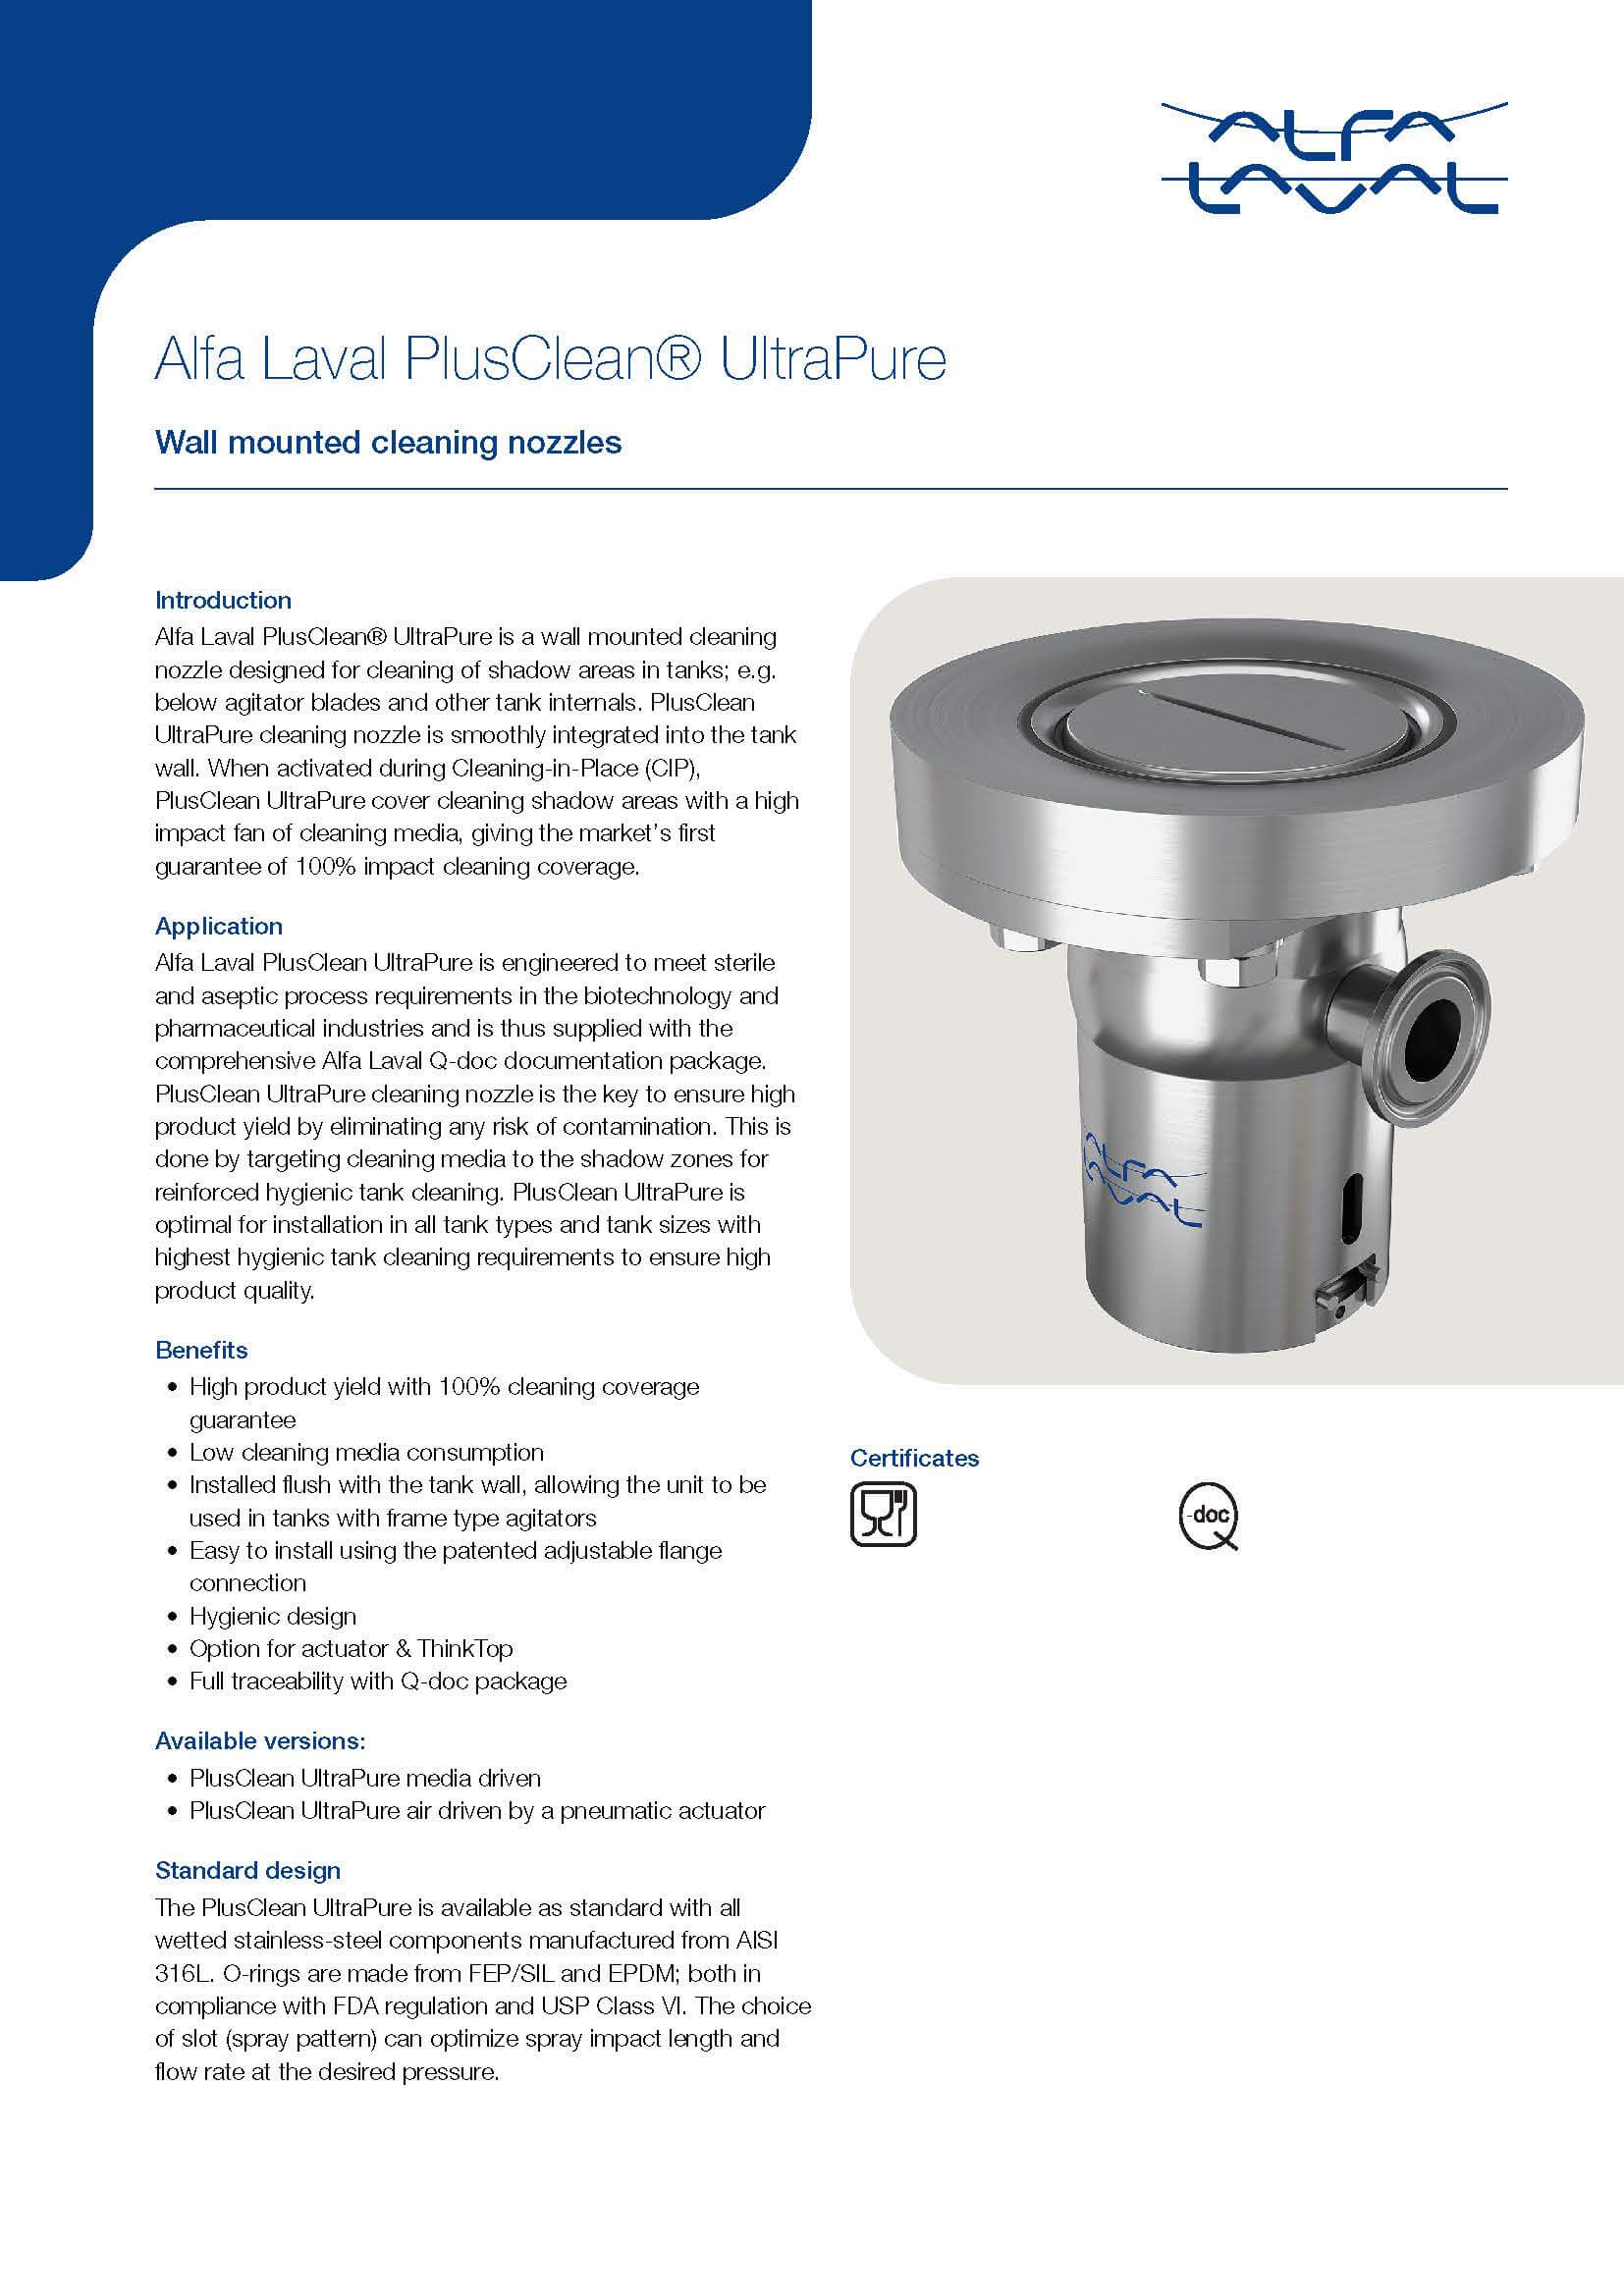 Alfa Laval PlusClean UltraPure Product Data Leaflet